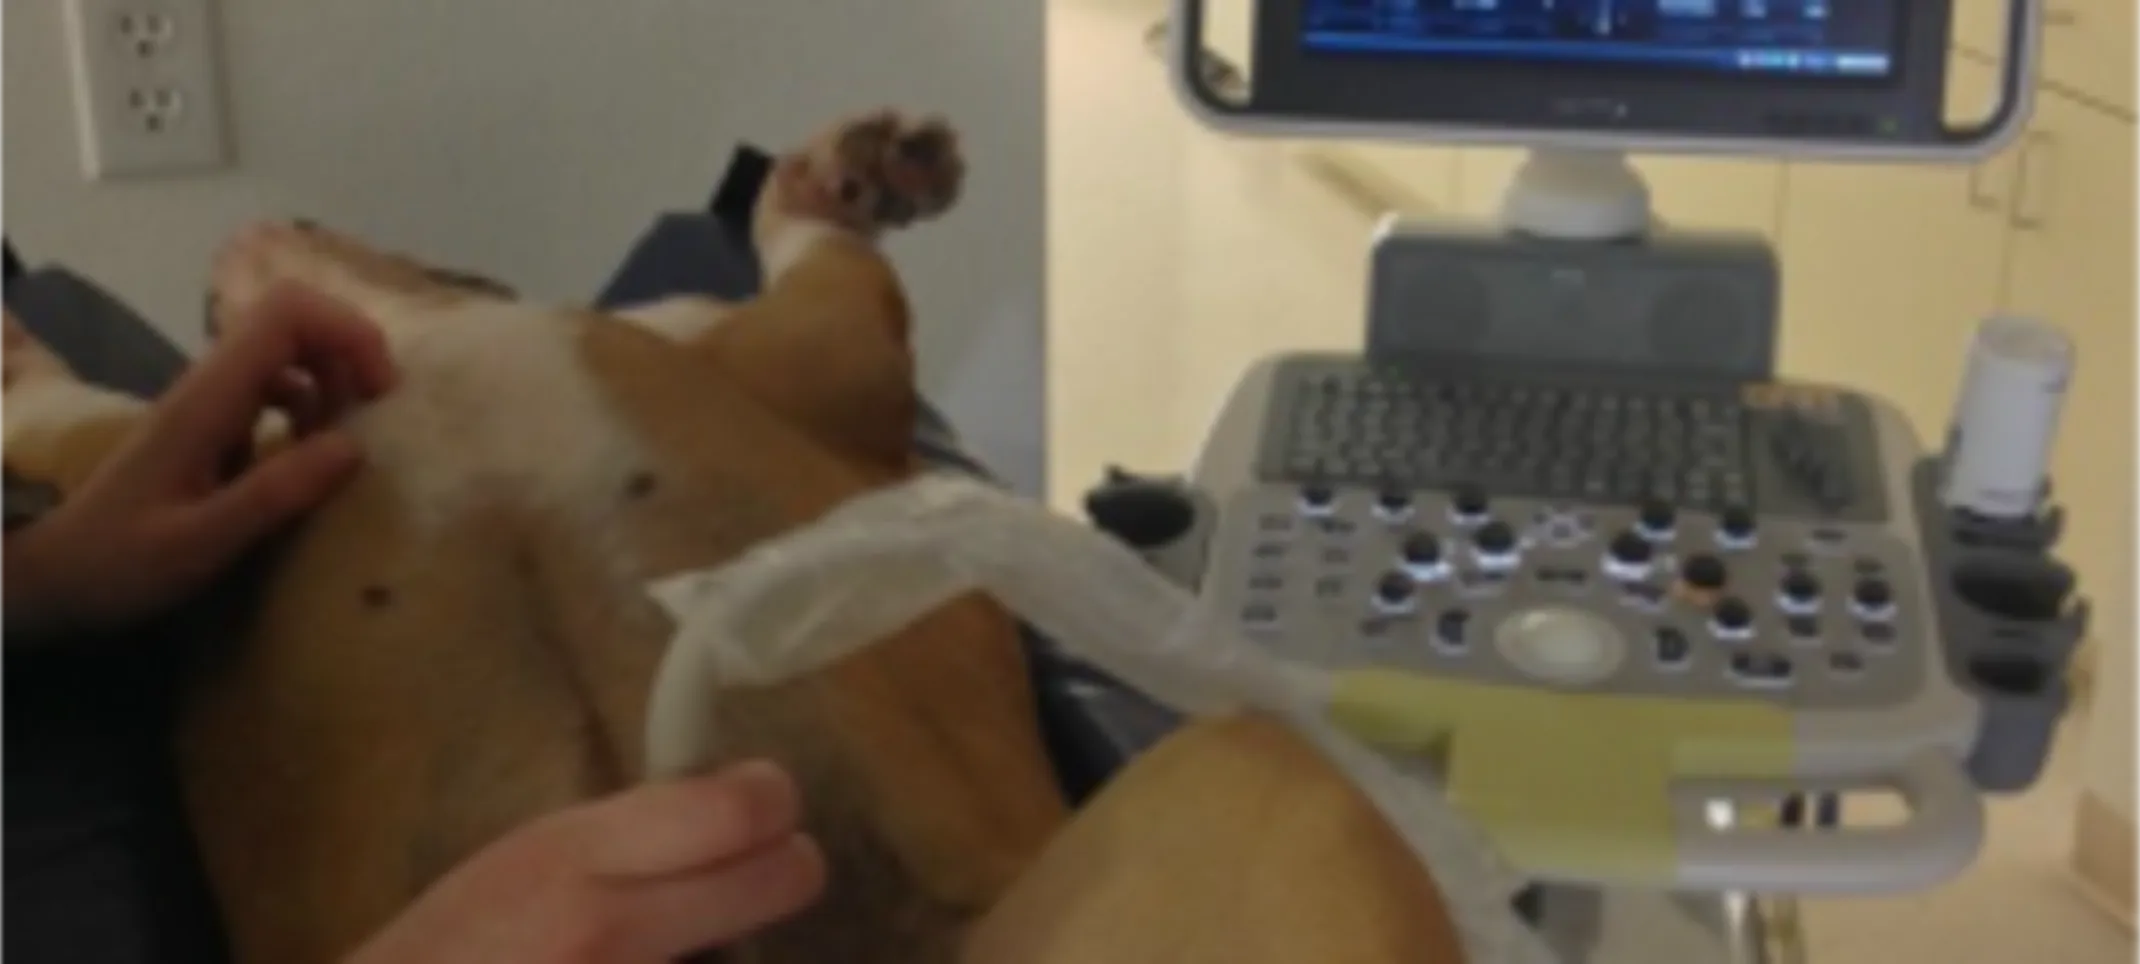 Dog receiving an ultrasound